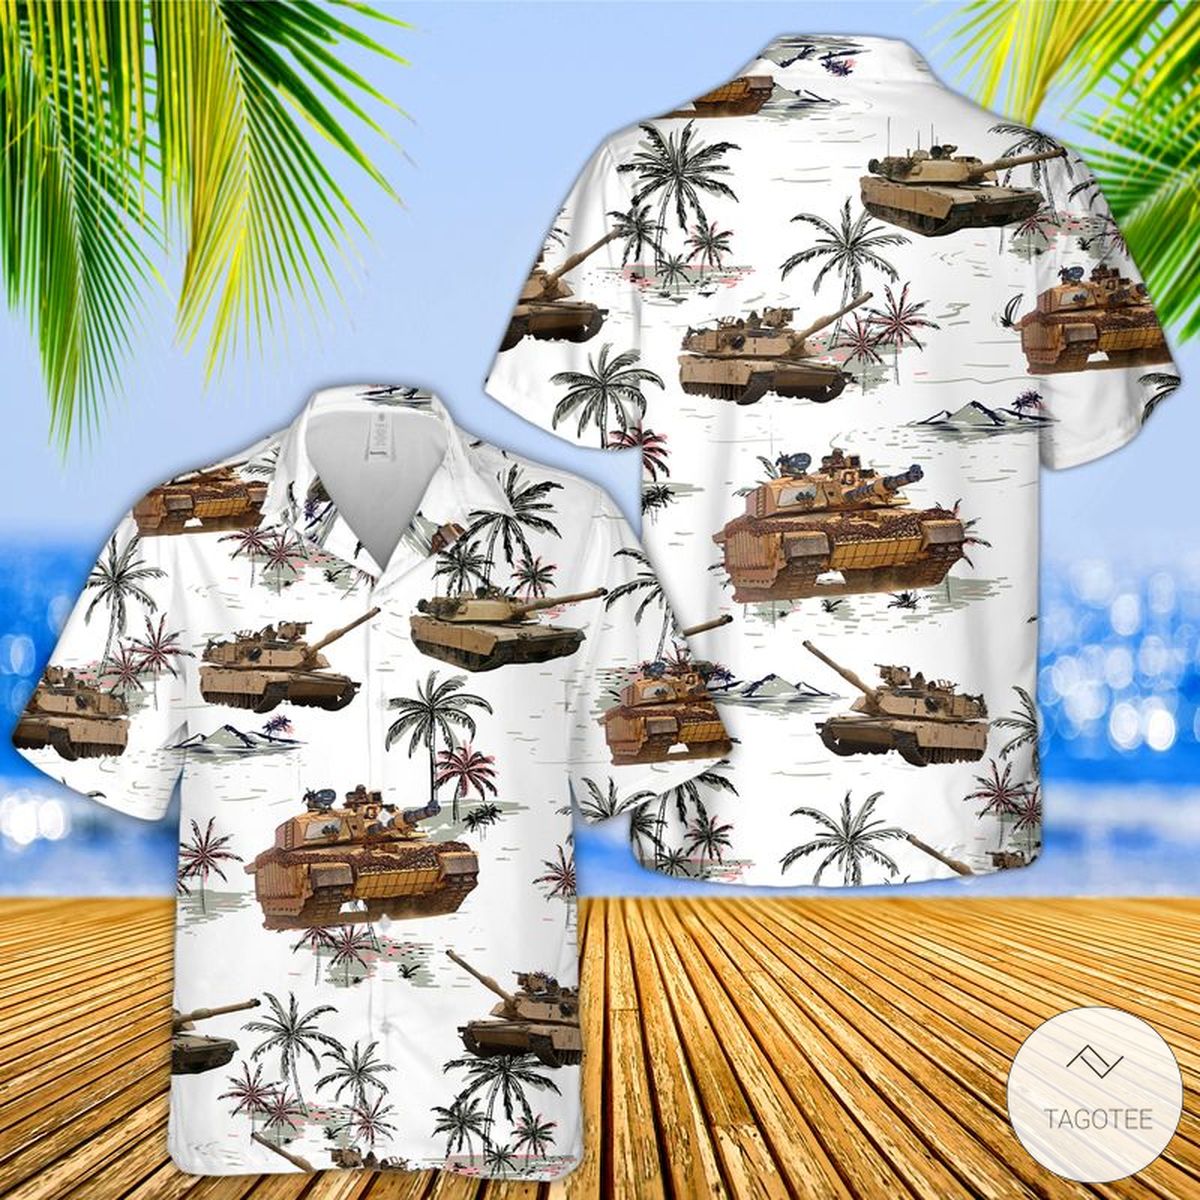 M1 Abrams Hawaiian Shirt Beach Shorts